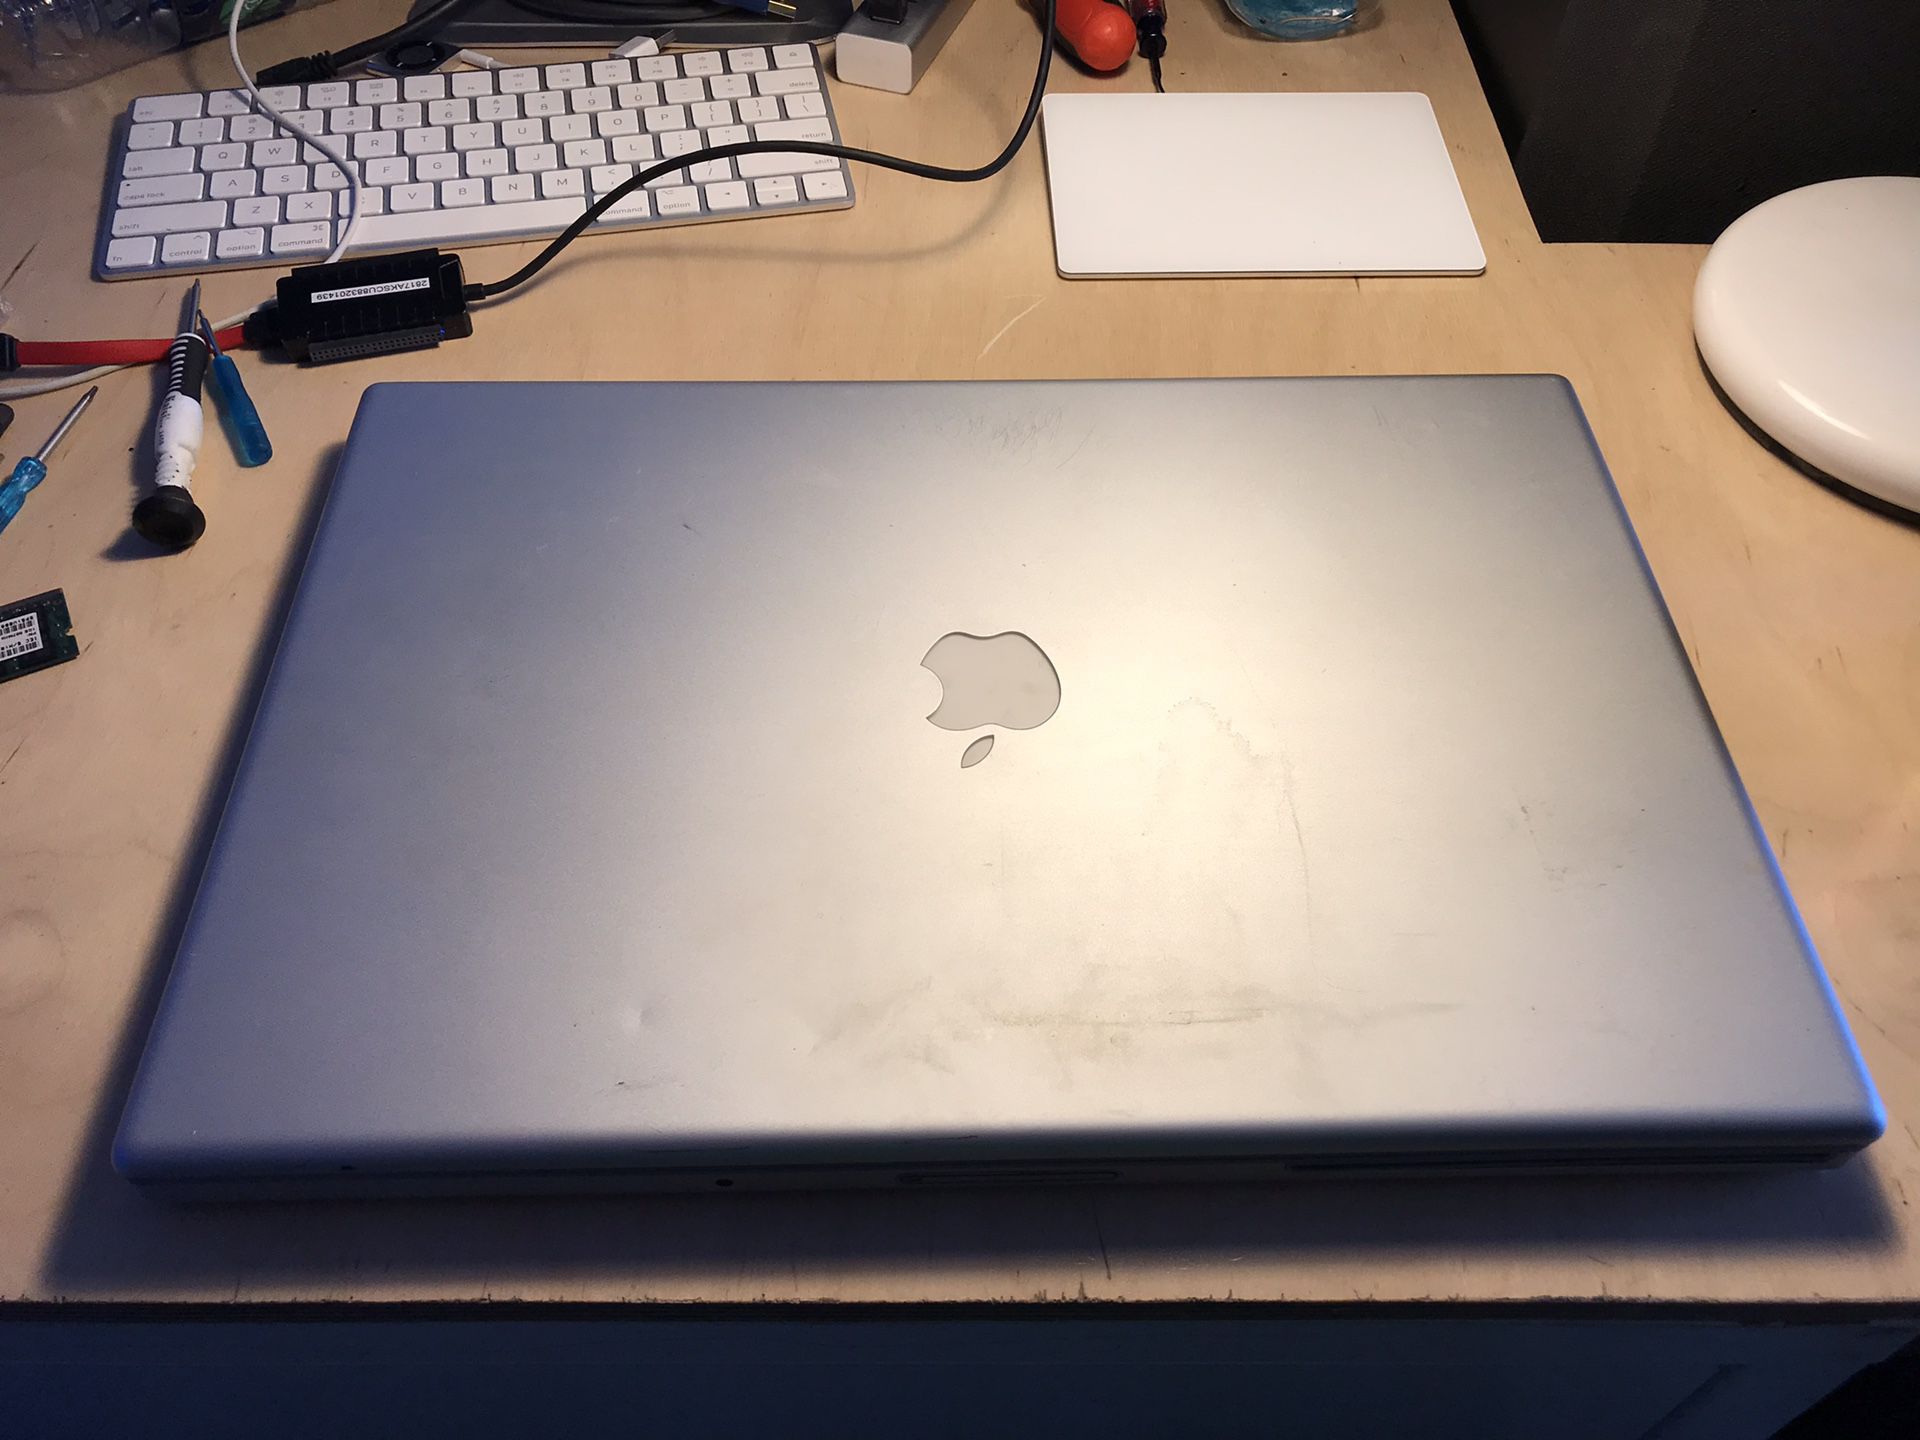 2007 17 inch MacBook Pro